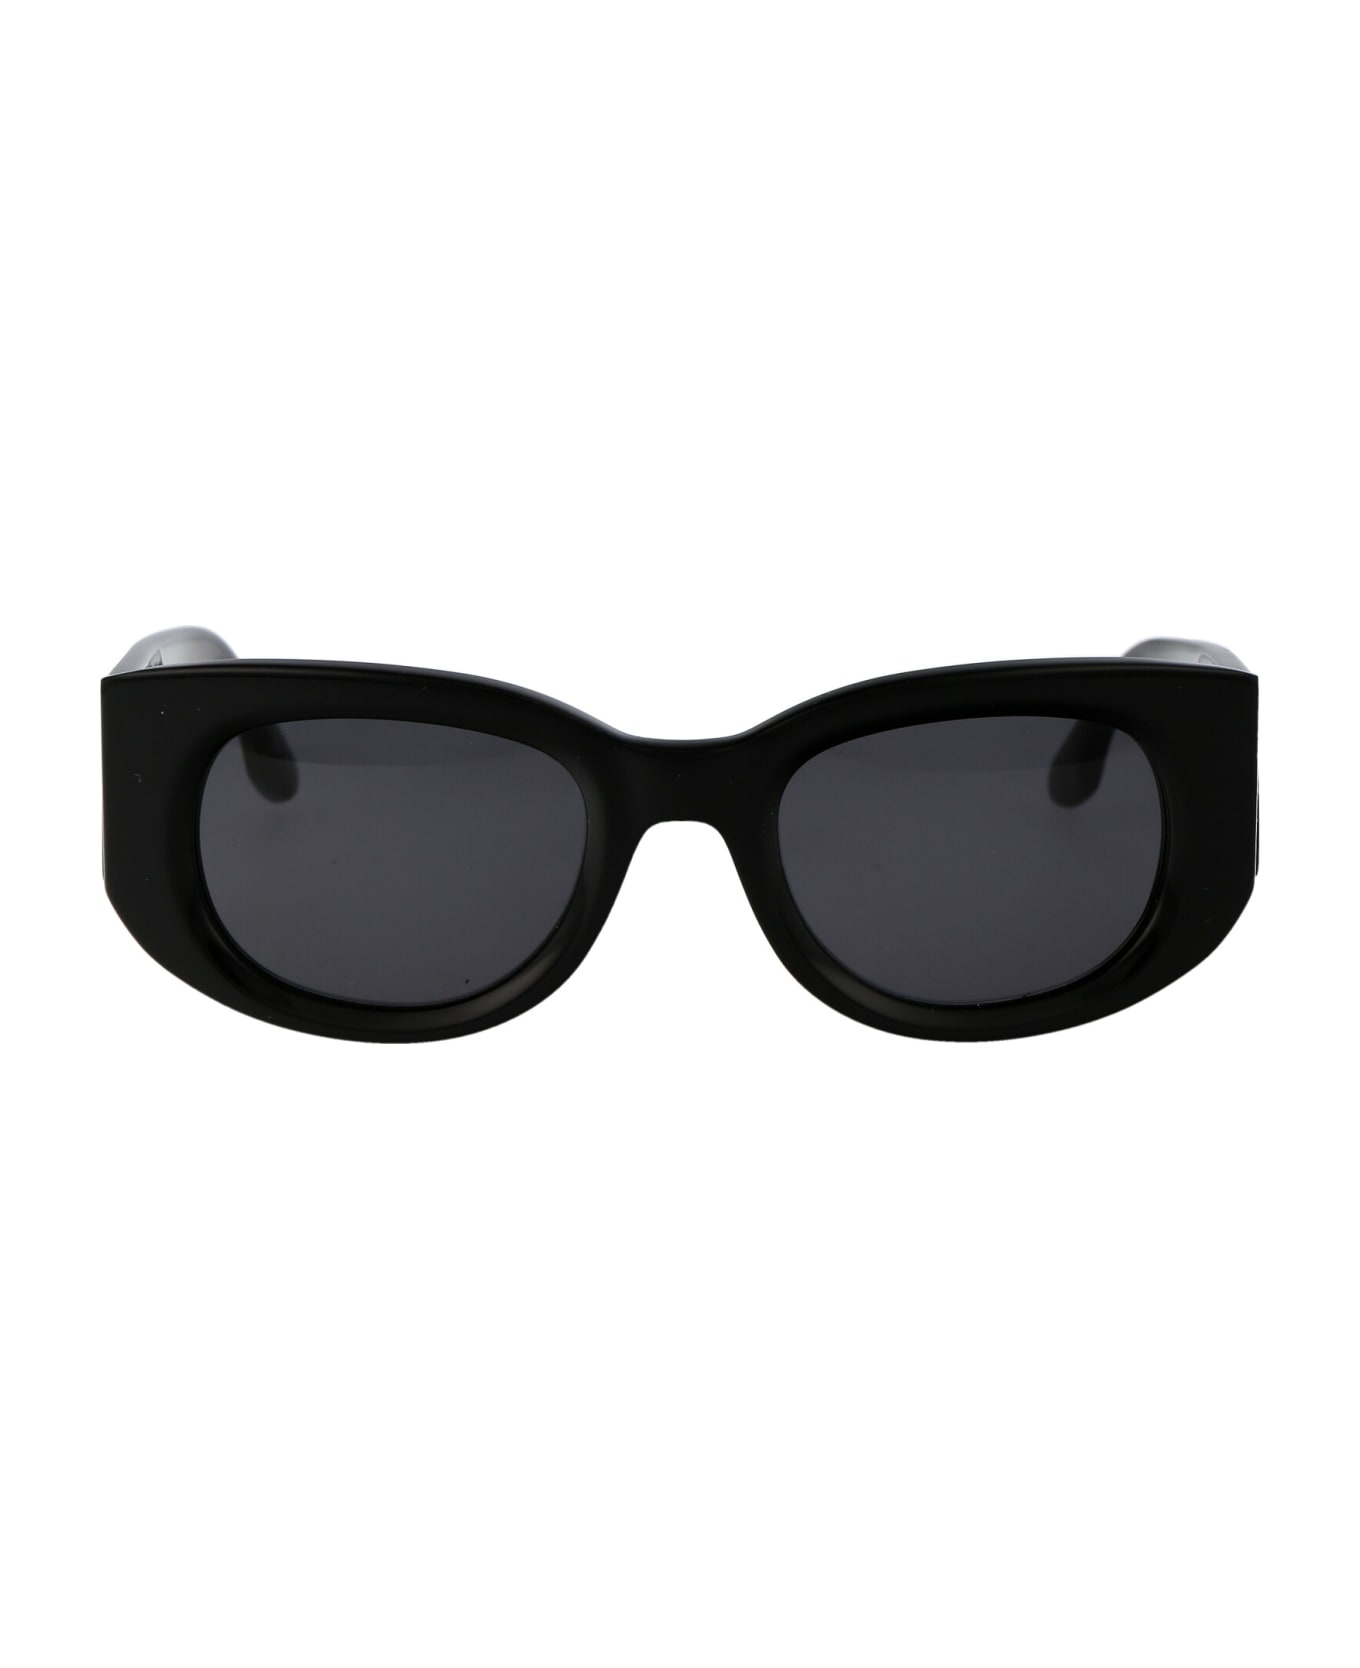 Victoria Beckham Vb654s Sunglasses - 001 BLACK